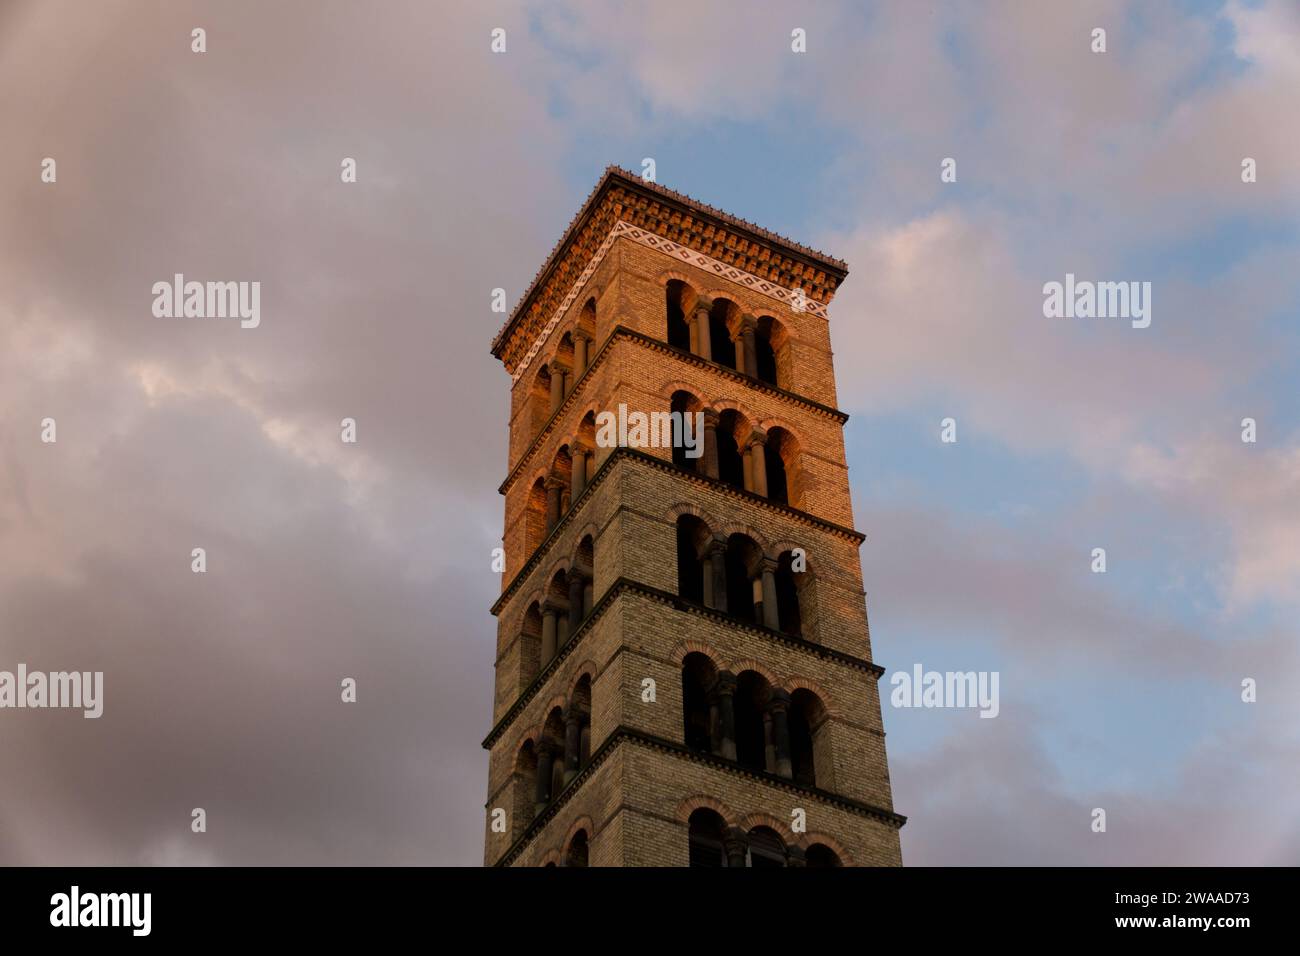 Während die Sonne untergeht, erleuchtet sein warmes Leuchten einen kunstvollen historischen Turm in Potsdam, der die komplizierten Details und das romantische Ambiente der Stadt unterstreicht Stockfoto